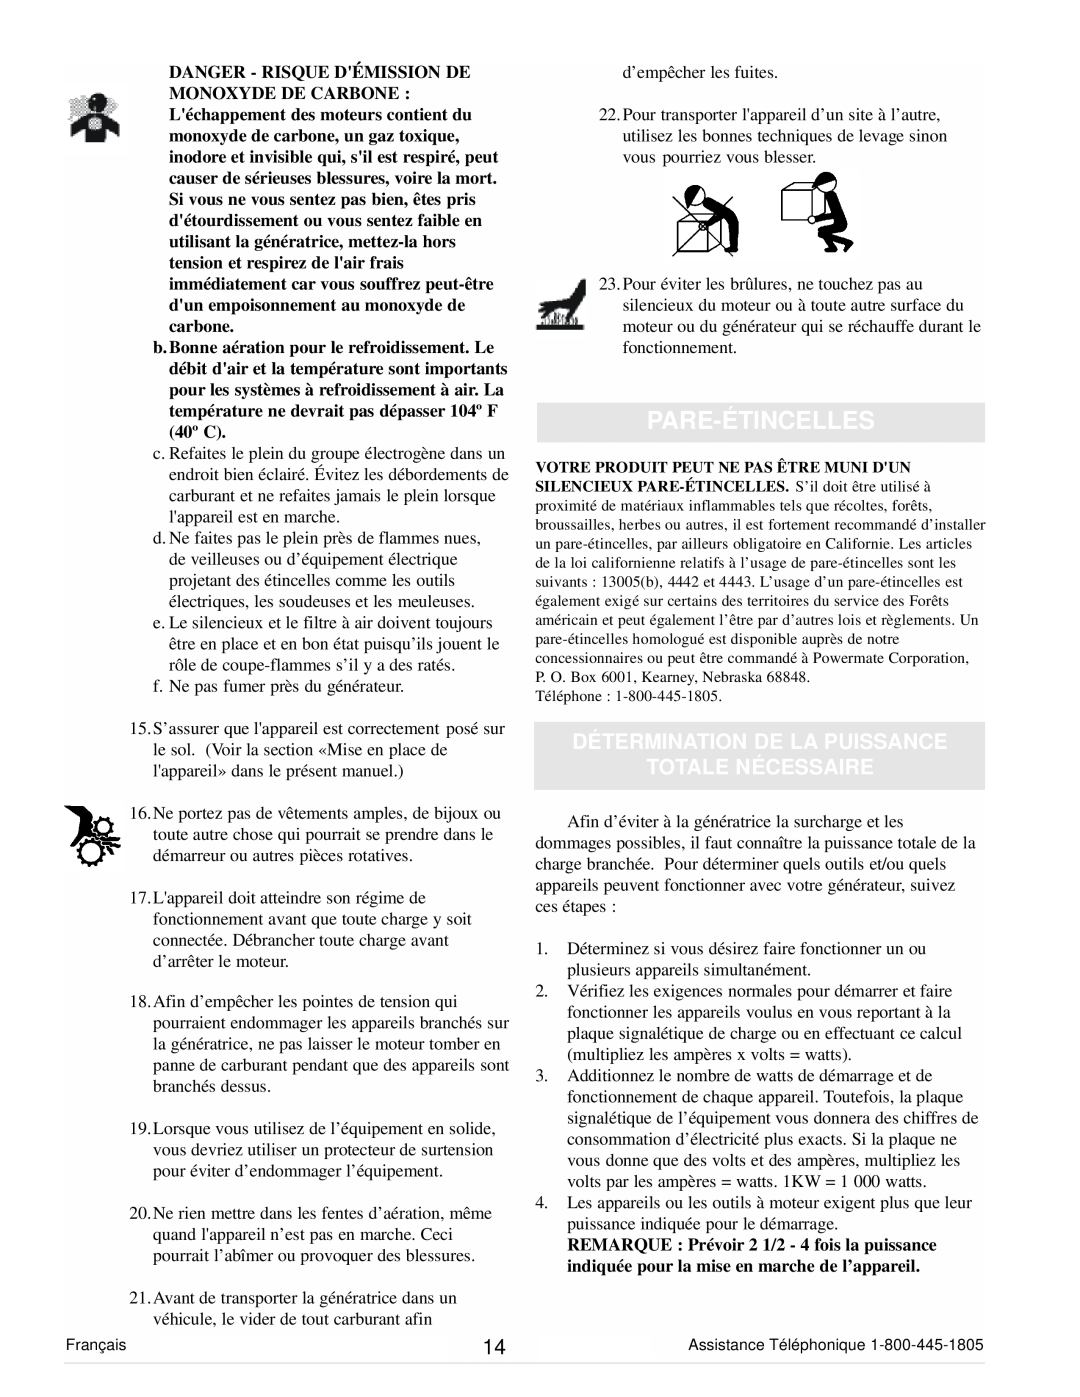 Powermate PC0101100 manual Pare-Étincelles, Détermination De La Puissance Totale Nécessaire 